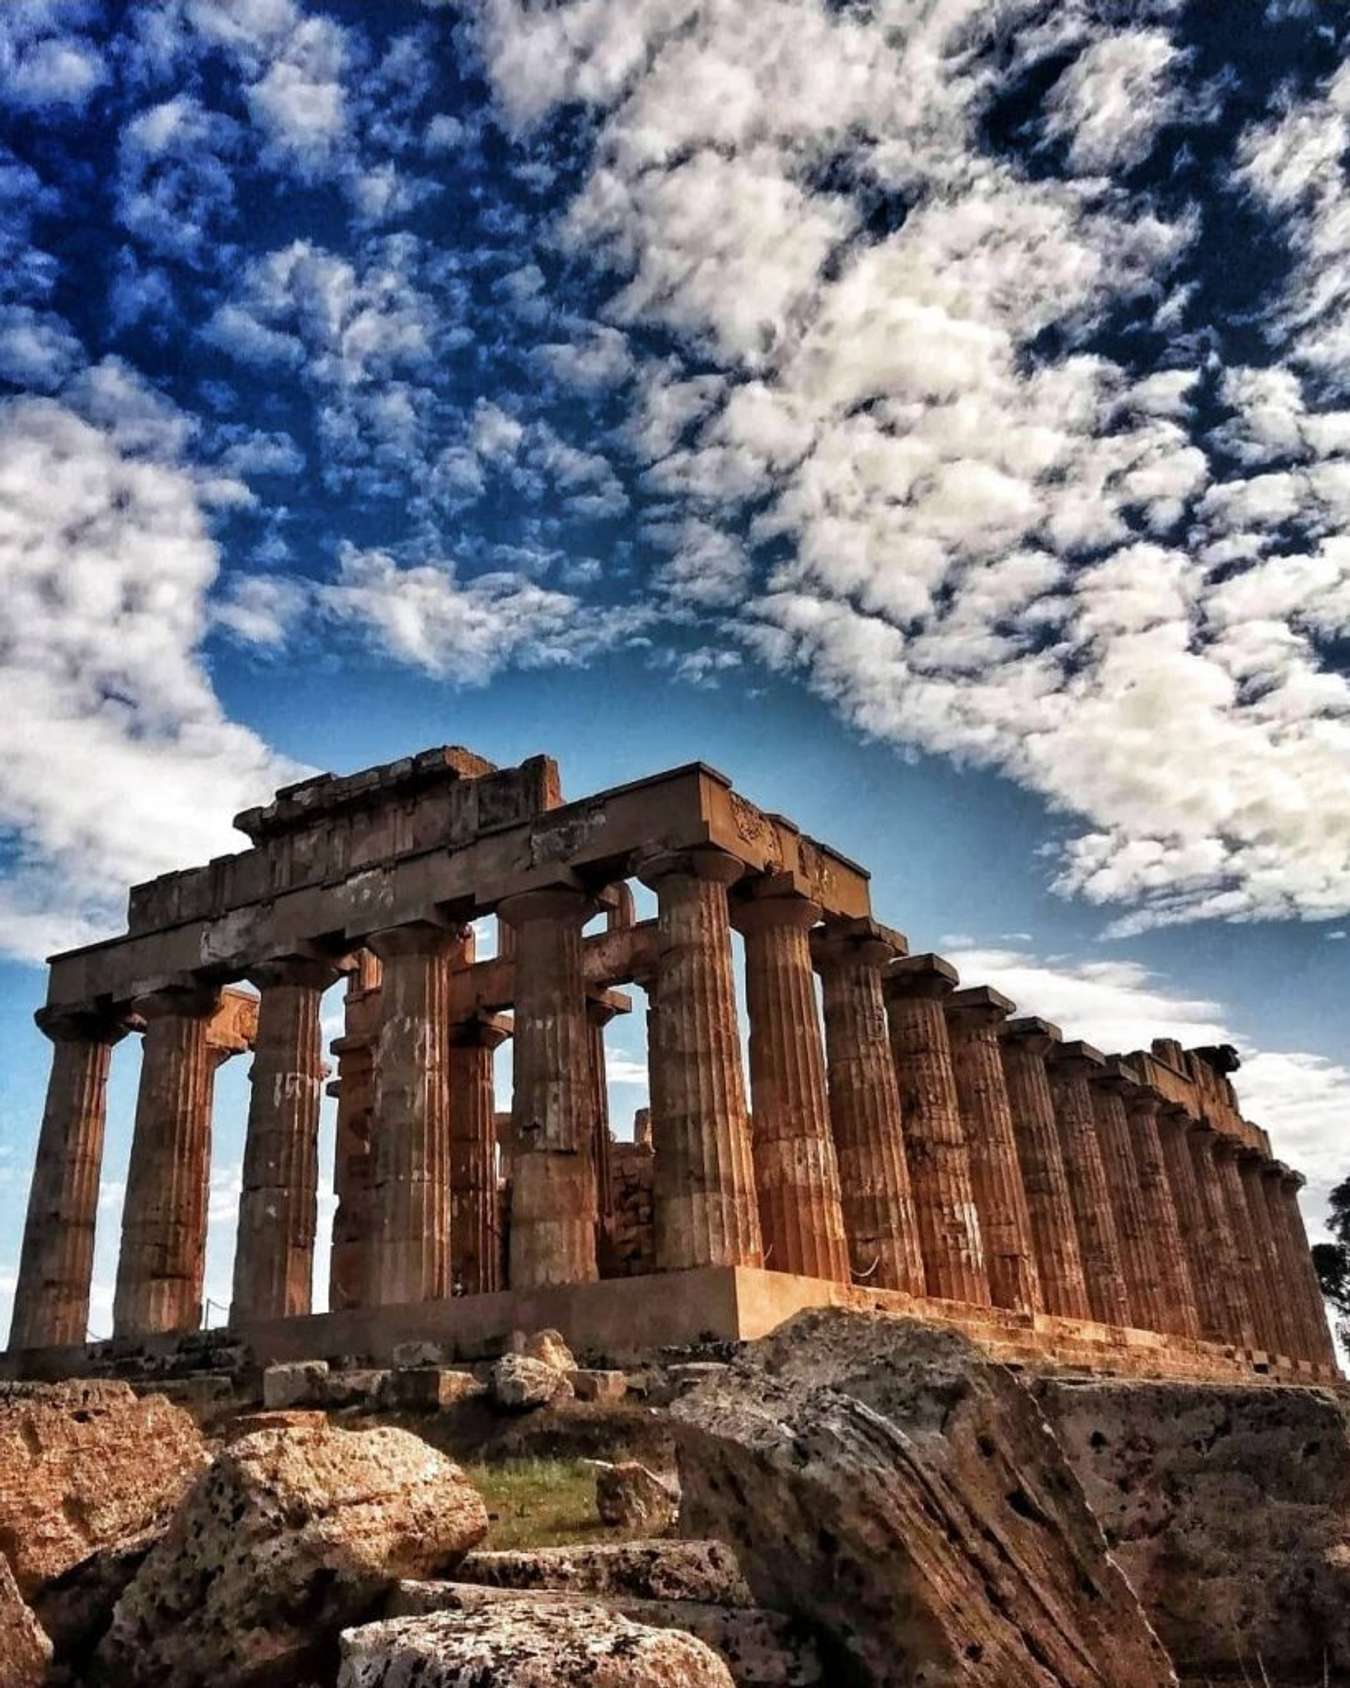 Du lịch Hy Lạp đã trở thành lựa chọn hàng đầu của khách du lịch yêu thích văn hóa cổ đại. Đây là đất nước có nền văn hóa đa dạng và đa chiều, trong đó văn hóa Hy Lạp cổ đại được coi là kim ngọc vô giá của thế giới. Một chuyến đi đến Hy Lạp sẽ mang đến cho bạn những trải nghiệm không thể quên với những di tích lịch sử vô giá như đền Parthenon, thánh địa Olimpia hay đền Hygia.